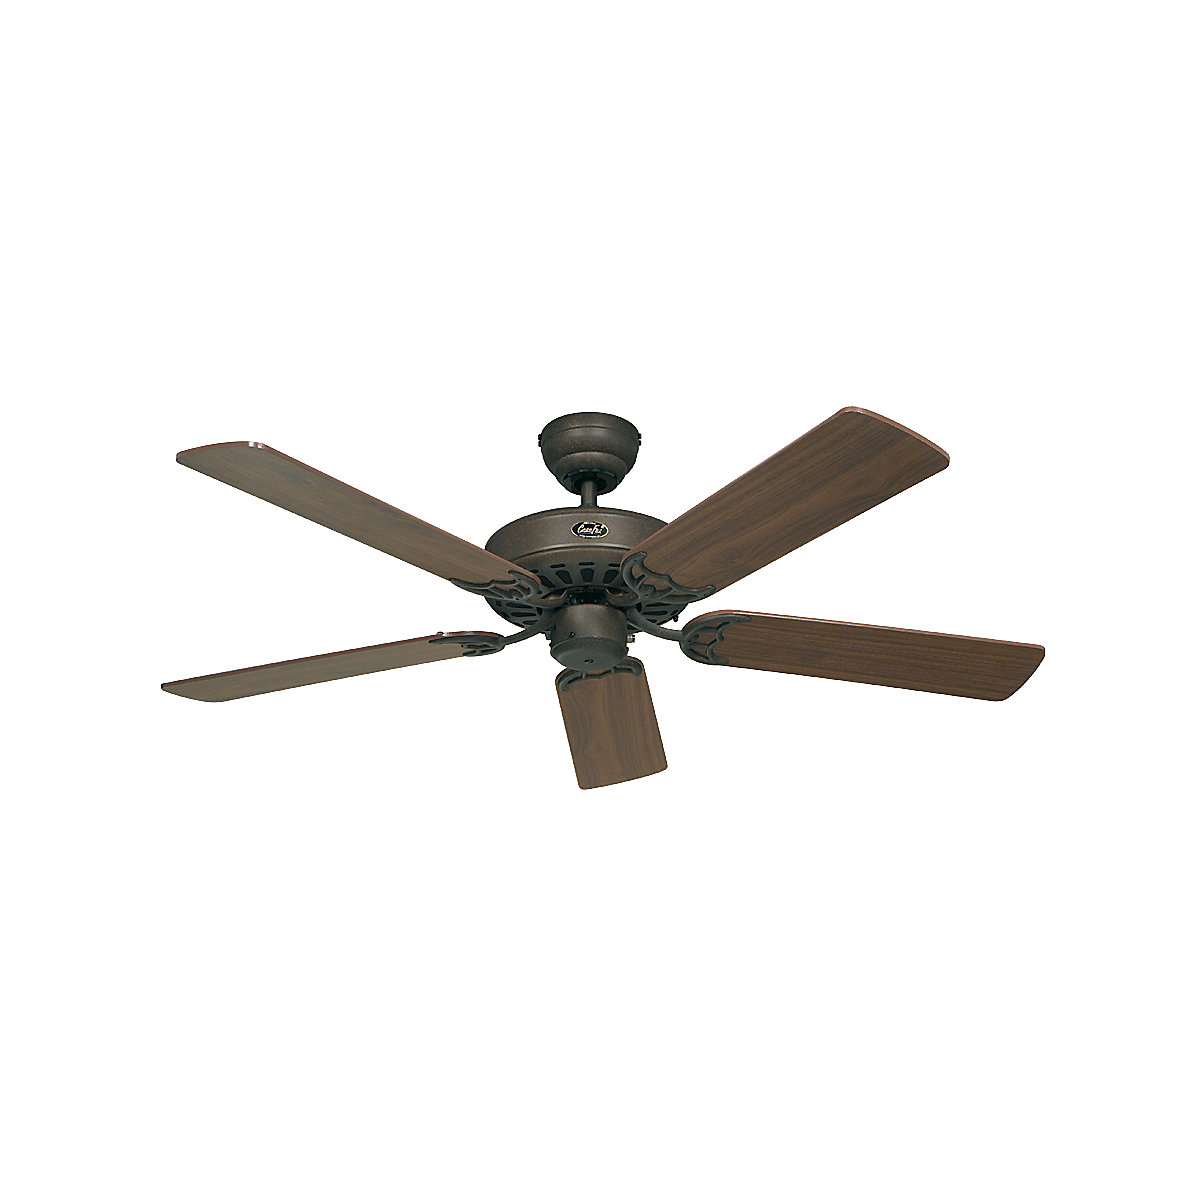 Stropni ventilator CLASSIC ROYAL, Ø lopatice rotora 1320 mm, u boji oraha / antički smeđoj / brončanoj boji-6